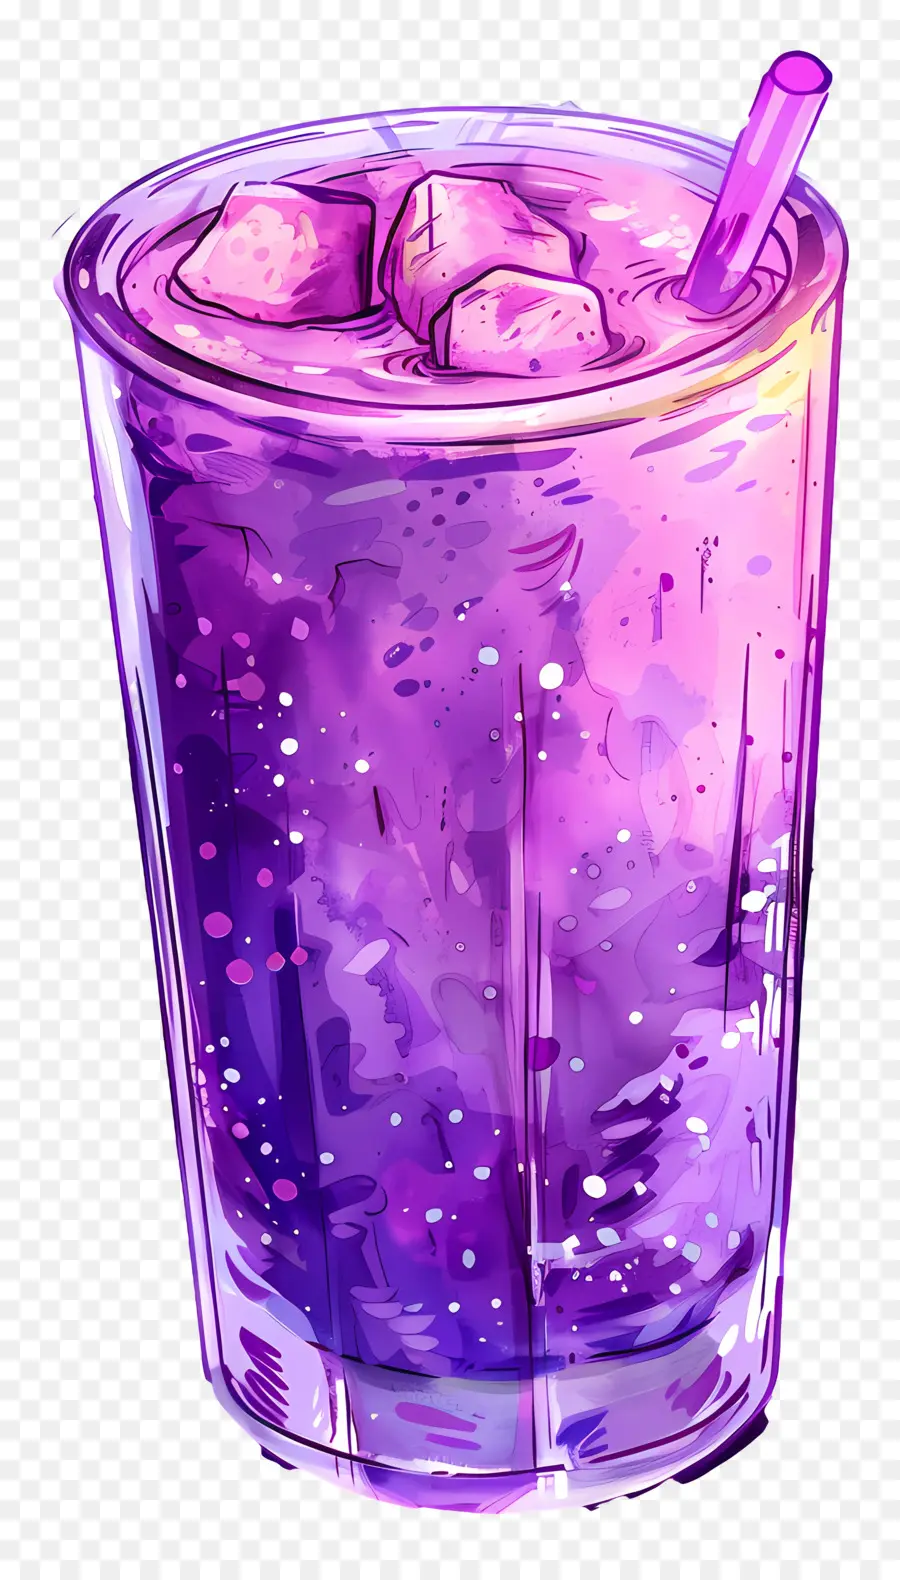 đồ uống solkadhi nước uống tím nước soda đá - Đồ uống màu tím với khối đá và rơm